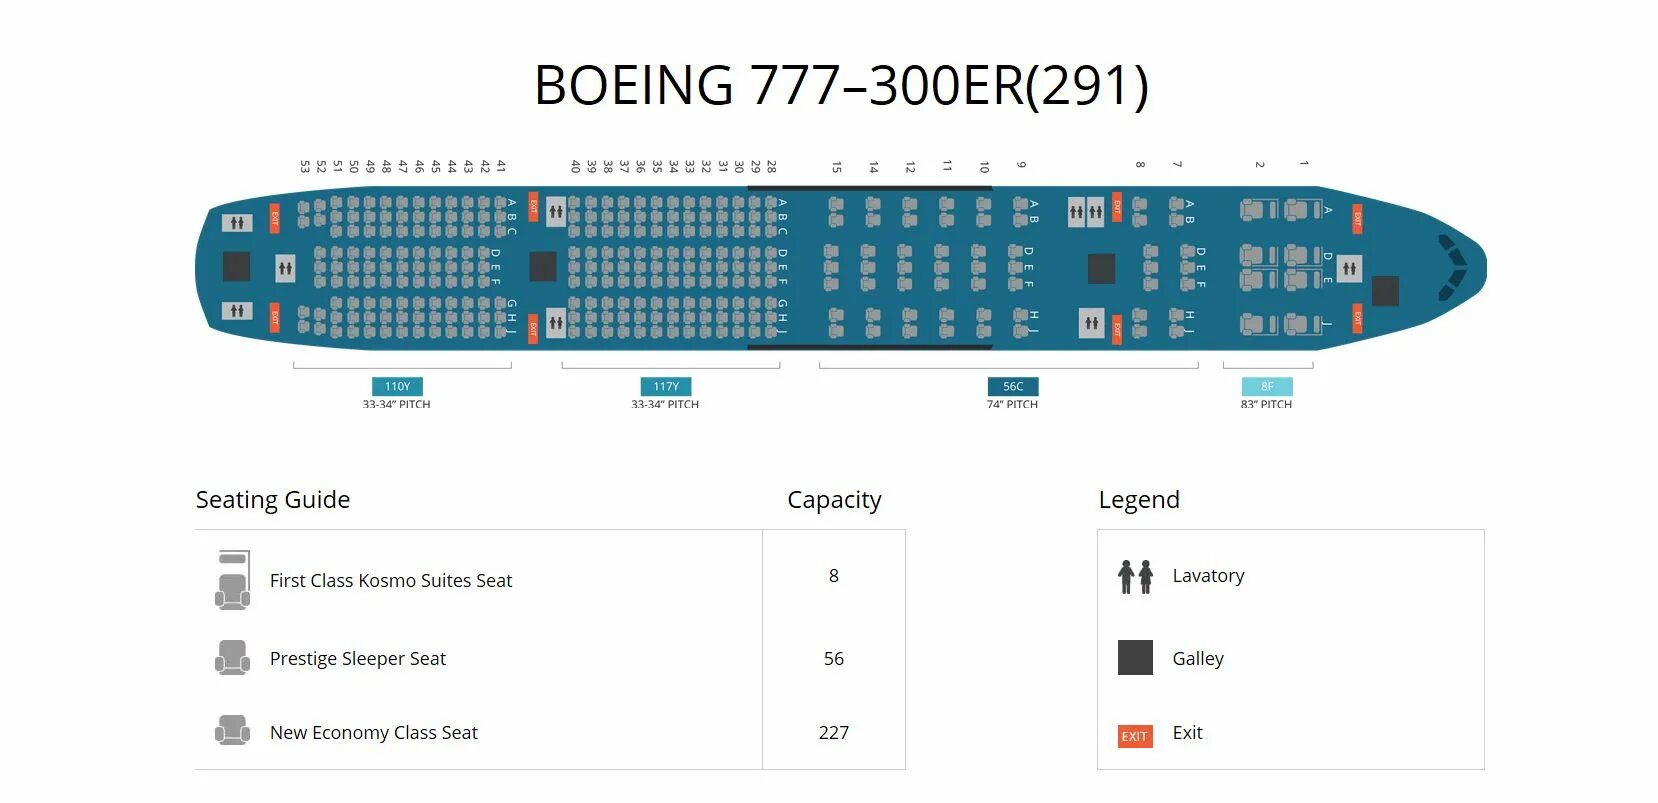 Посадочные места boeing 777 300er. Боинг 777 300 ер схема расположения мест. Схема мест в самолете Boeing 777-300er. Боинг 777 300er схема посадочных мест. Боинг 777-300ер Аэрофлот схема салона.